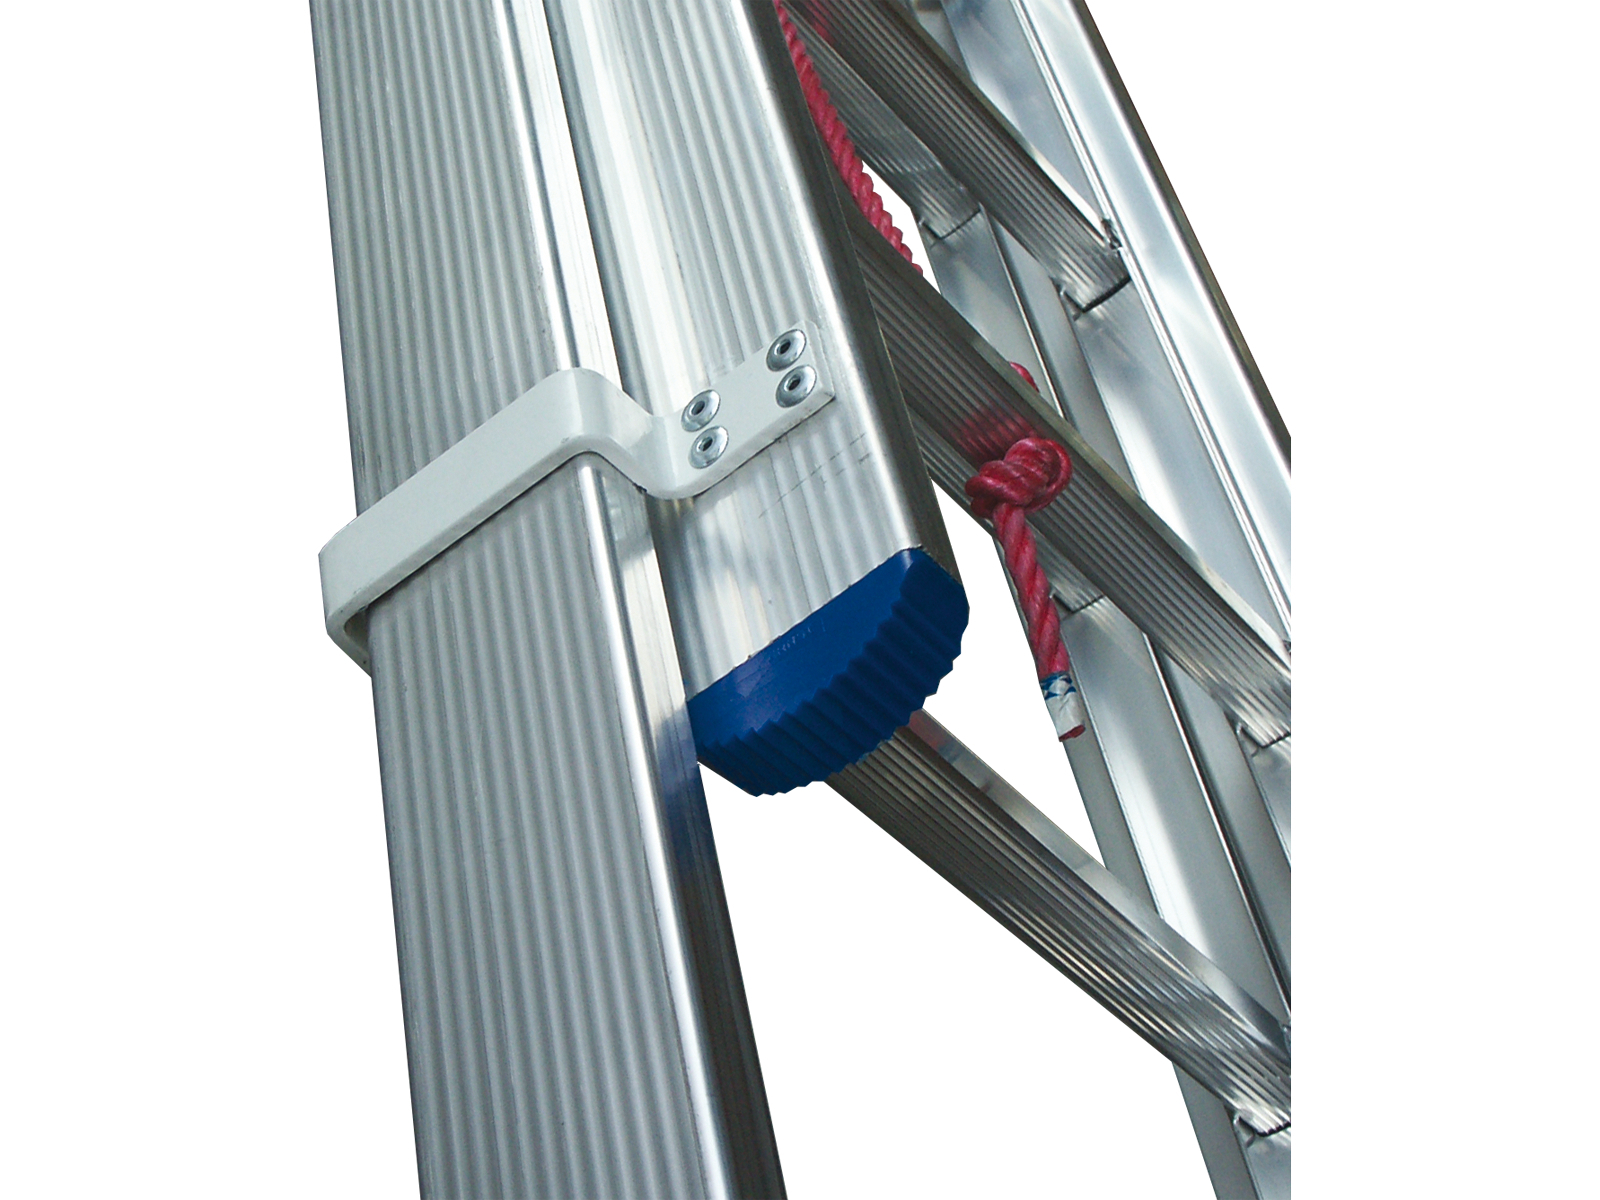 Seilzugleiter Industrieausführung, 2-teilig geschweißt, 2x12 Sprossen/Stufen